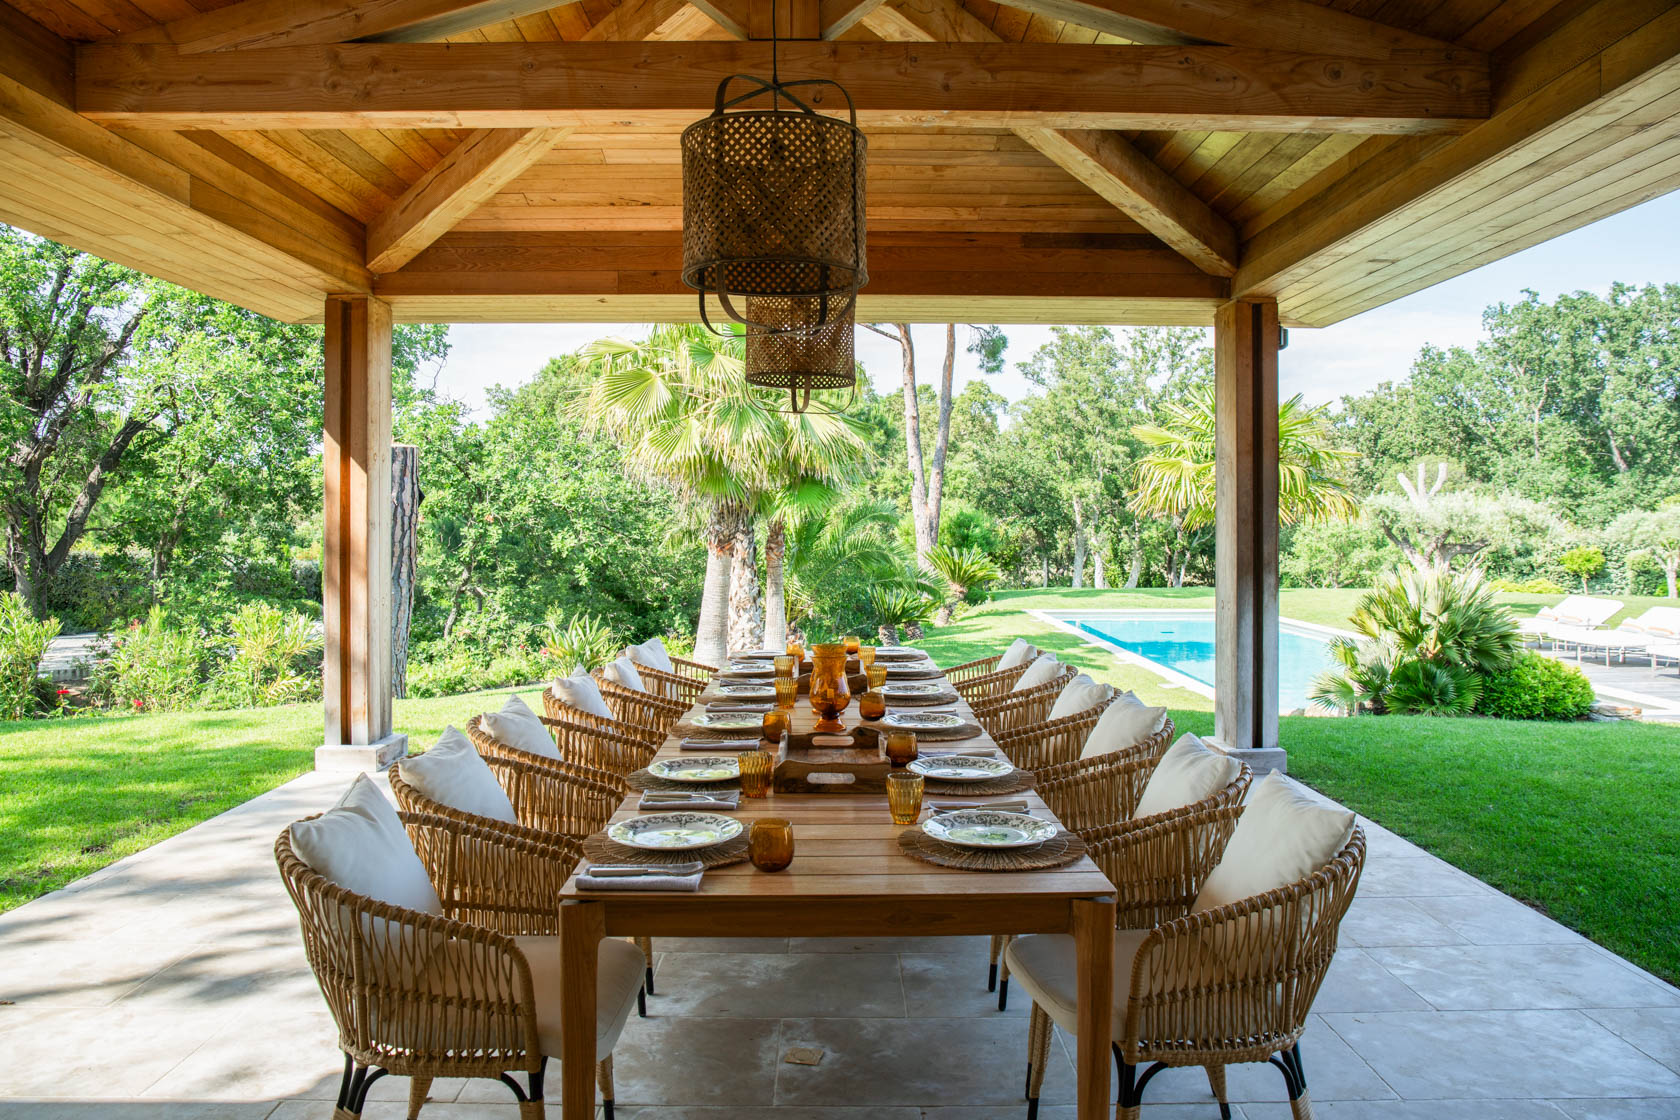 grande-table-a-manger-en-bois-entouree-de-chaises-en-osier-avec-des-coussins-blancs-sous-une-veranda-et-deux-luminaires-dans-un-jardin-avec-piscine